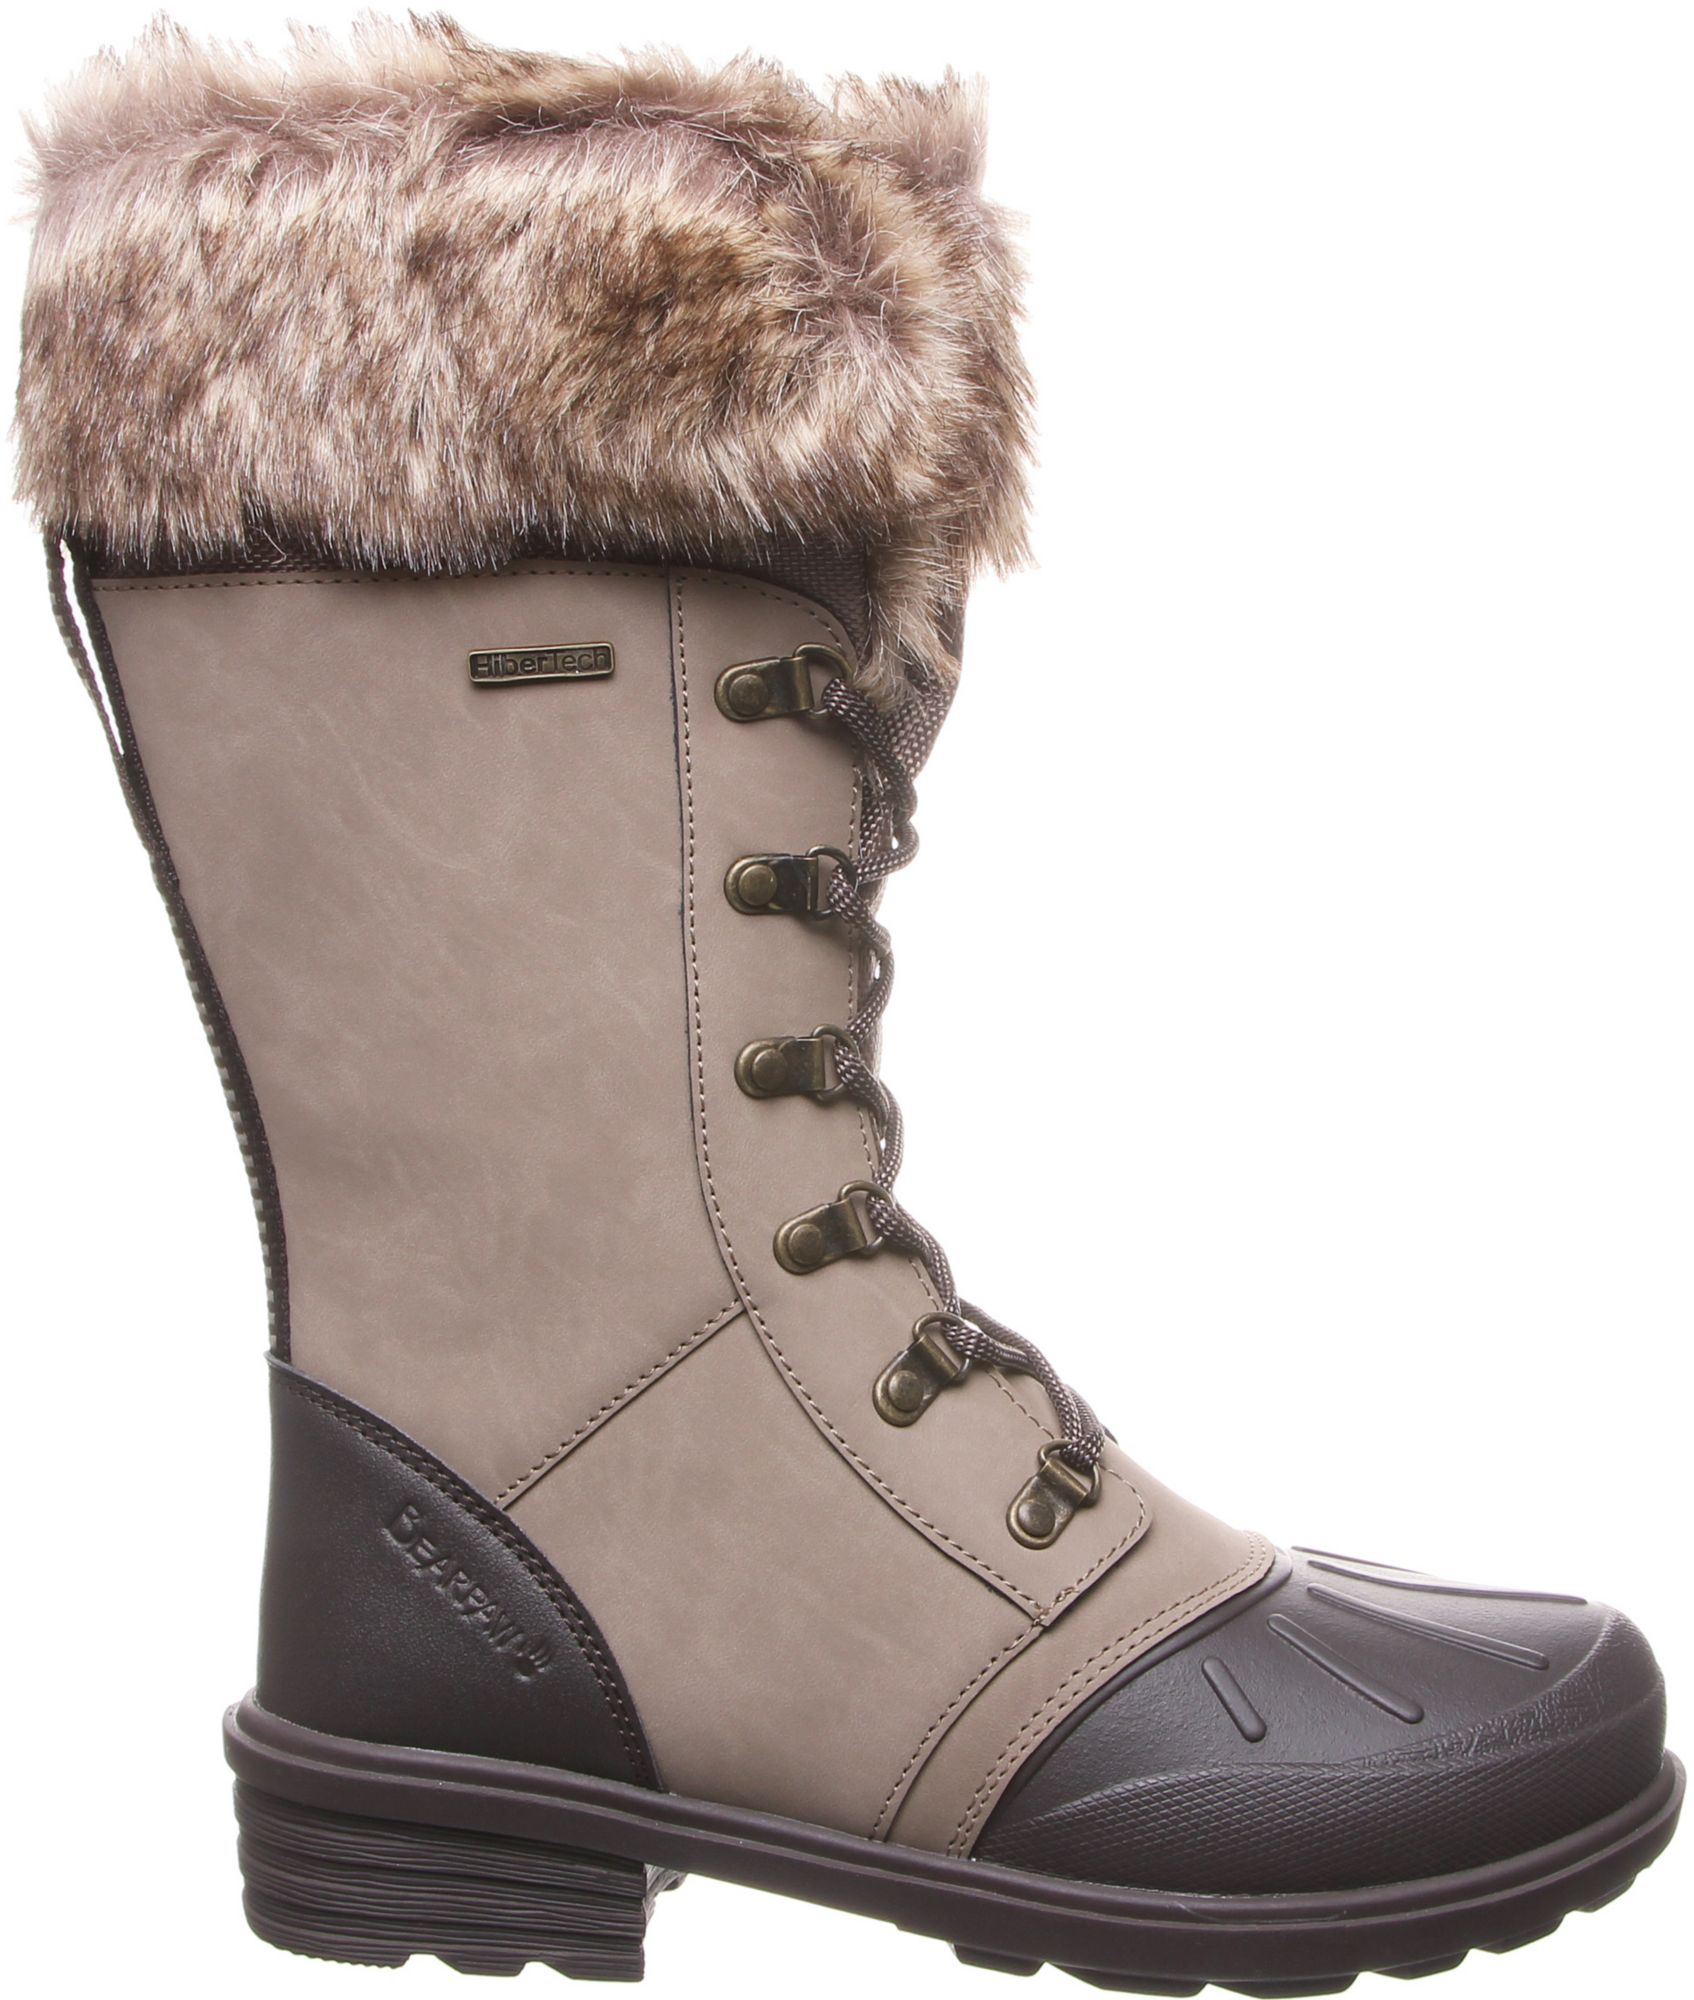 bearpaw women's winter boots